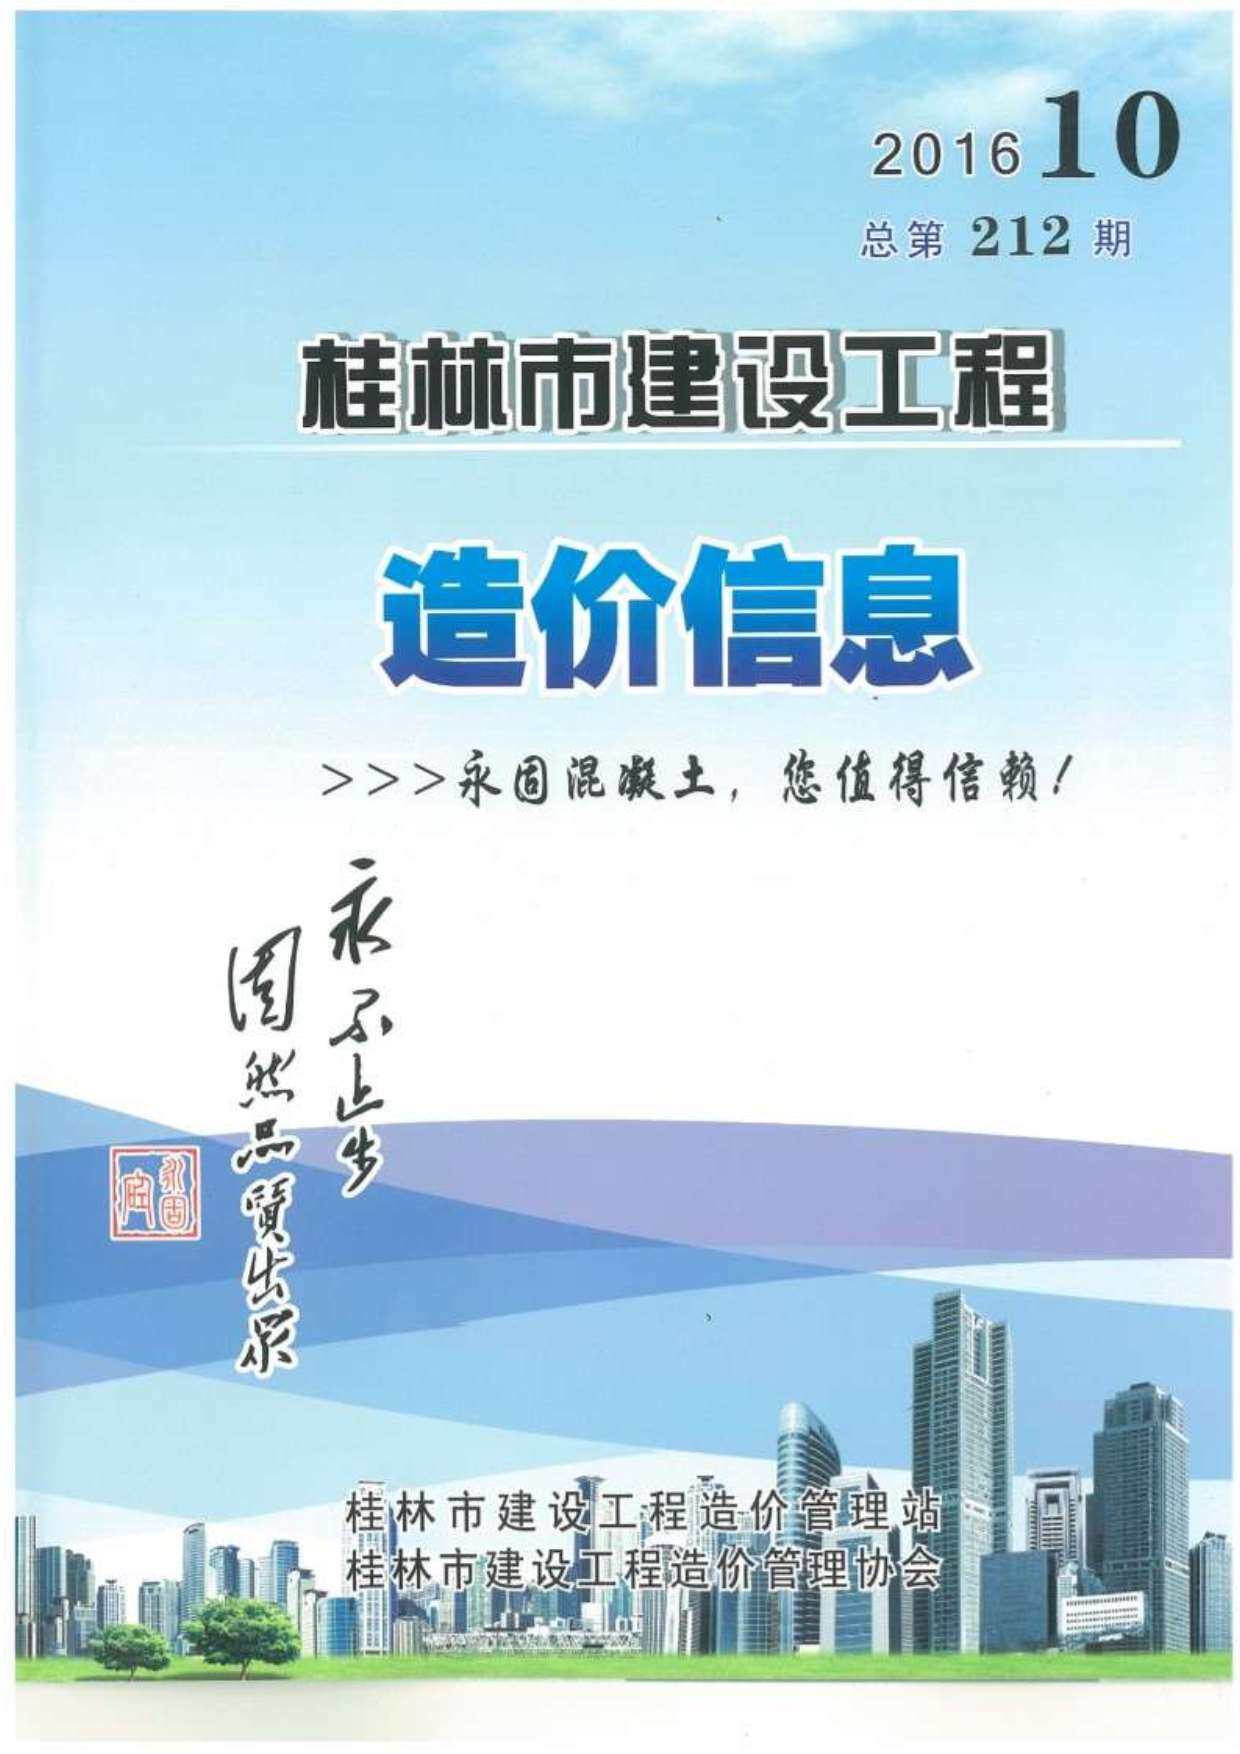 桂林市2016年10月工程造价信息期刊